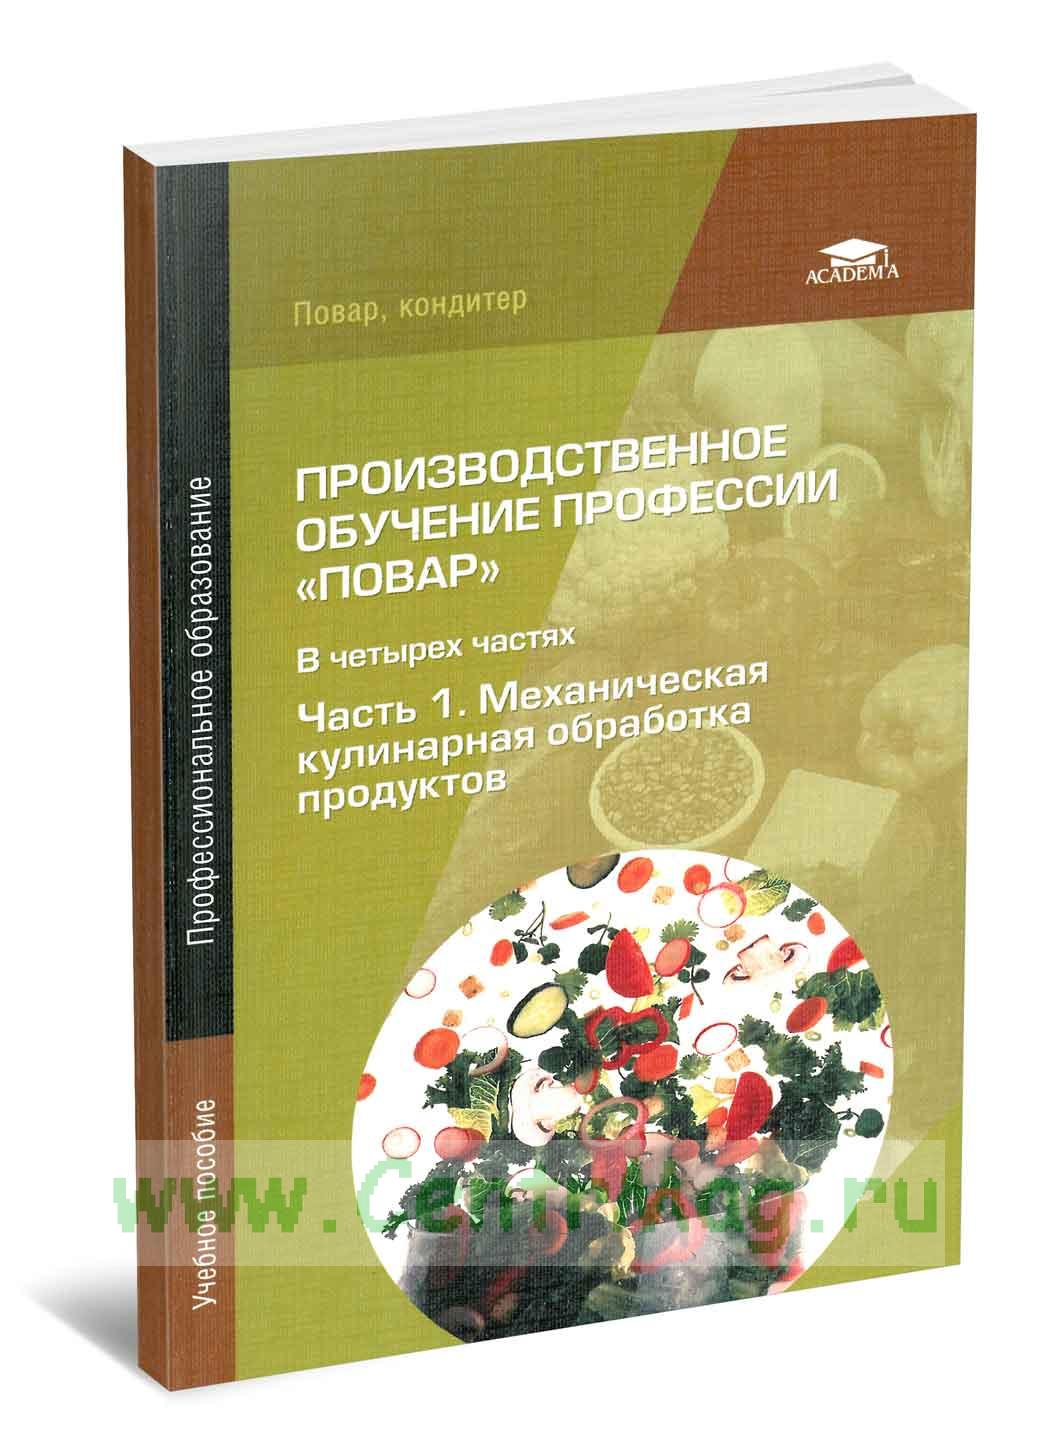 Учебное пособие: Механическая обработка овощей и грибов, технология приготовления полуфабрикатов из них